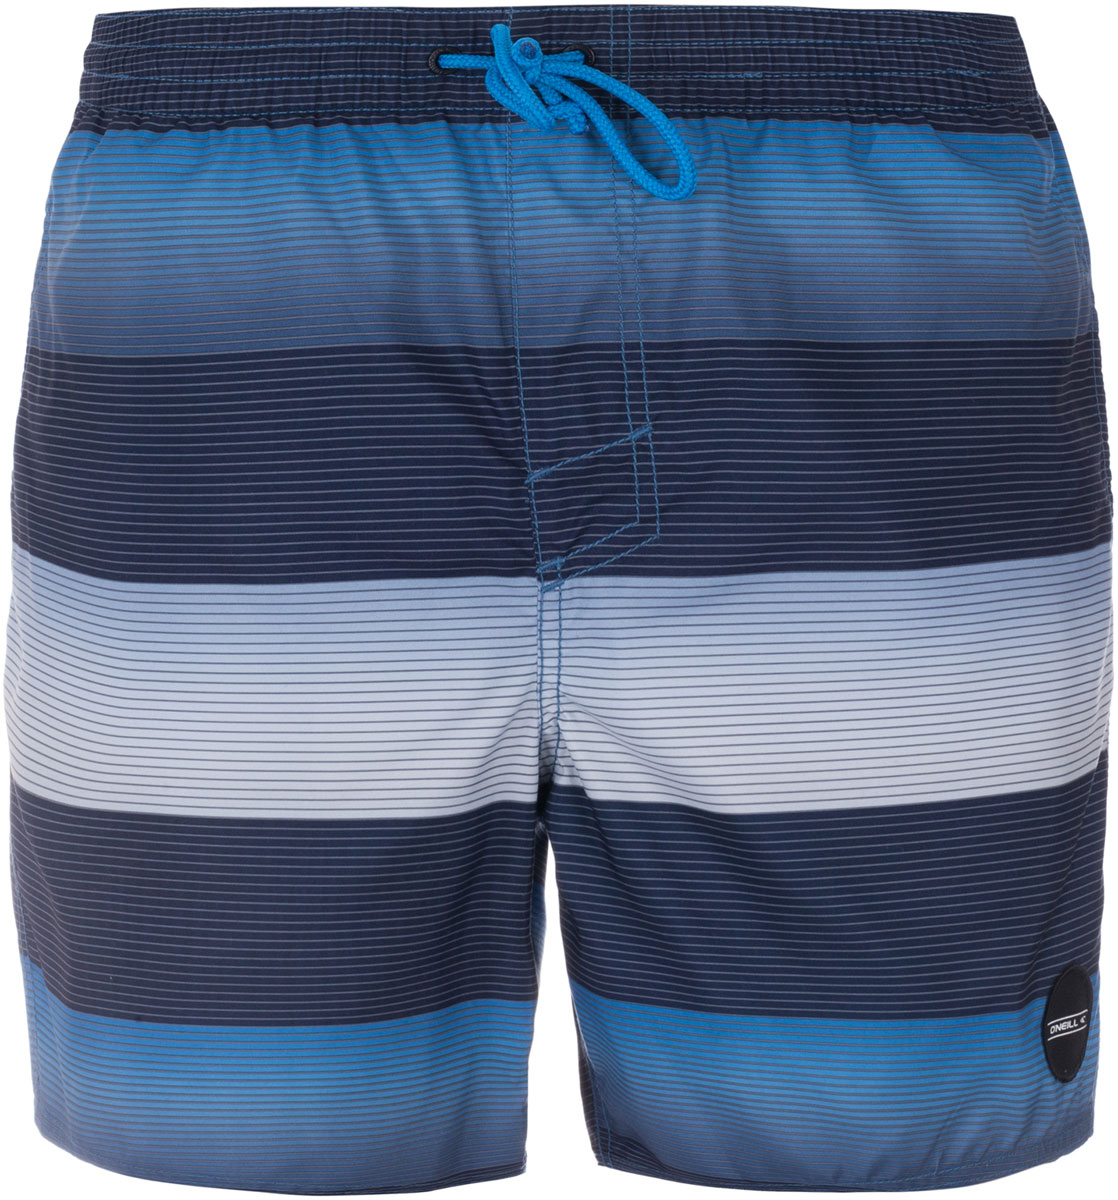 Шорты O'Neill Pm Santa Cruz Stripe Shorts - купить в интернет-магазине...